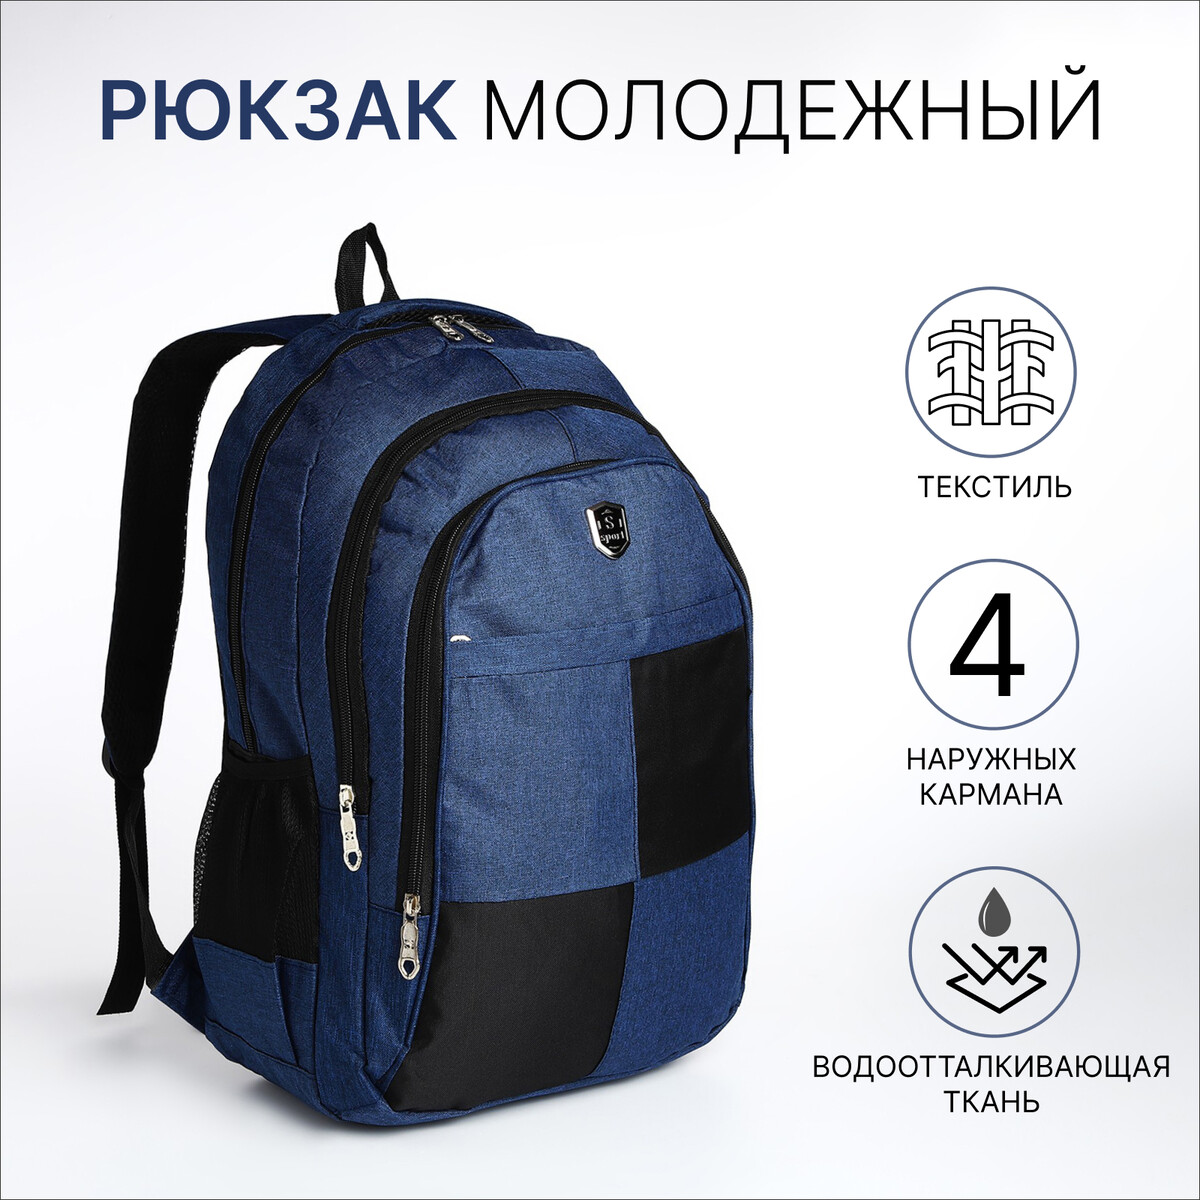 Рюкзак молодежный из текстиля, 2 отдела, 4 кармана, цвет синий